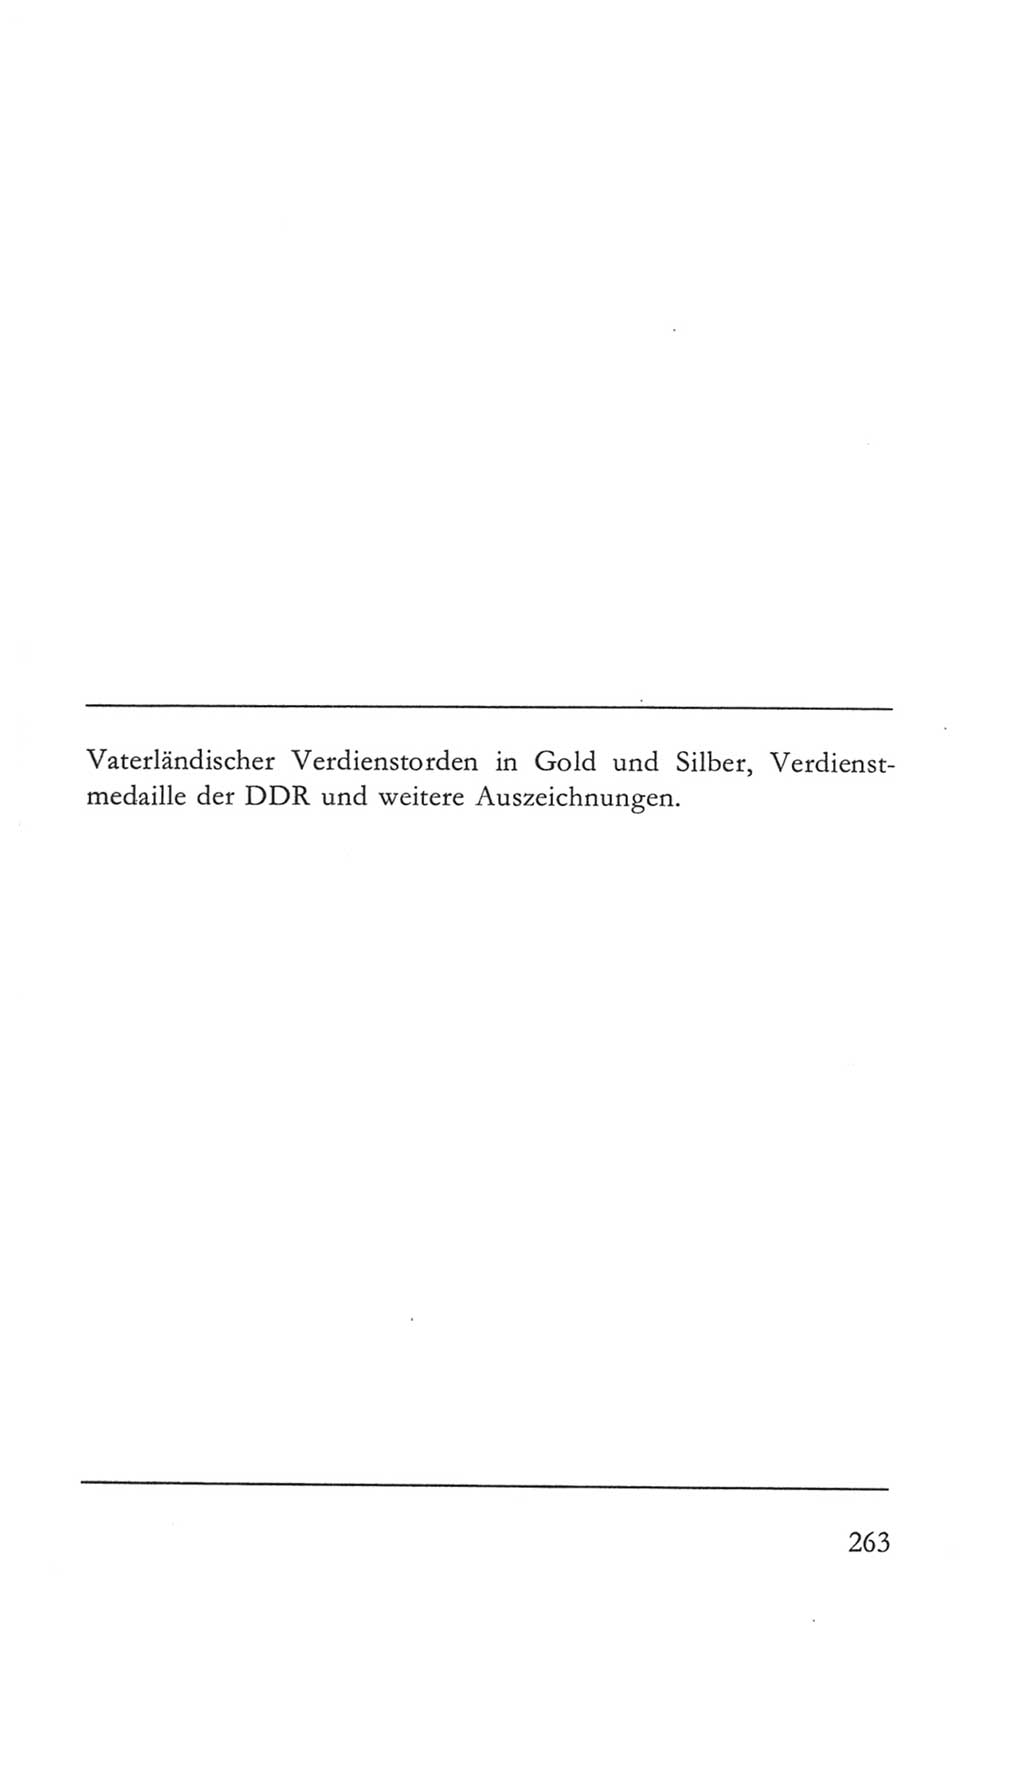 Volkskammer (VK) der Deutschen Demokratischen Republik (DDR) 5. Wahlperiode 1967-1971, Seite 263 (VK. DDR 5. WP. 1967-1971, S. 263)